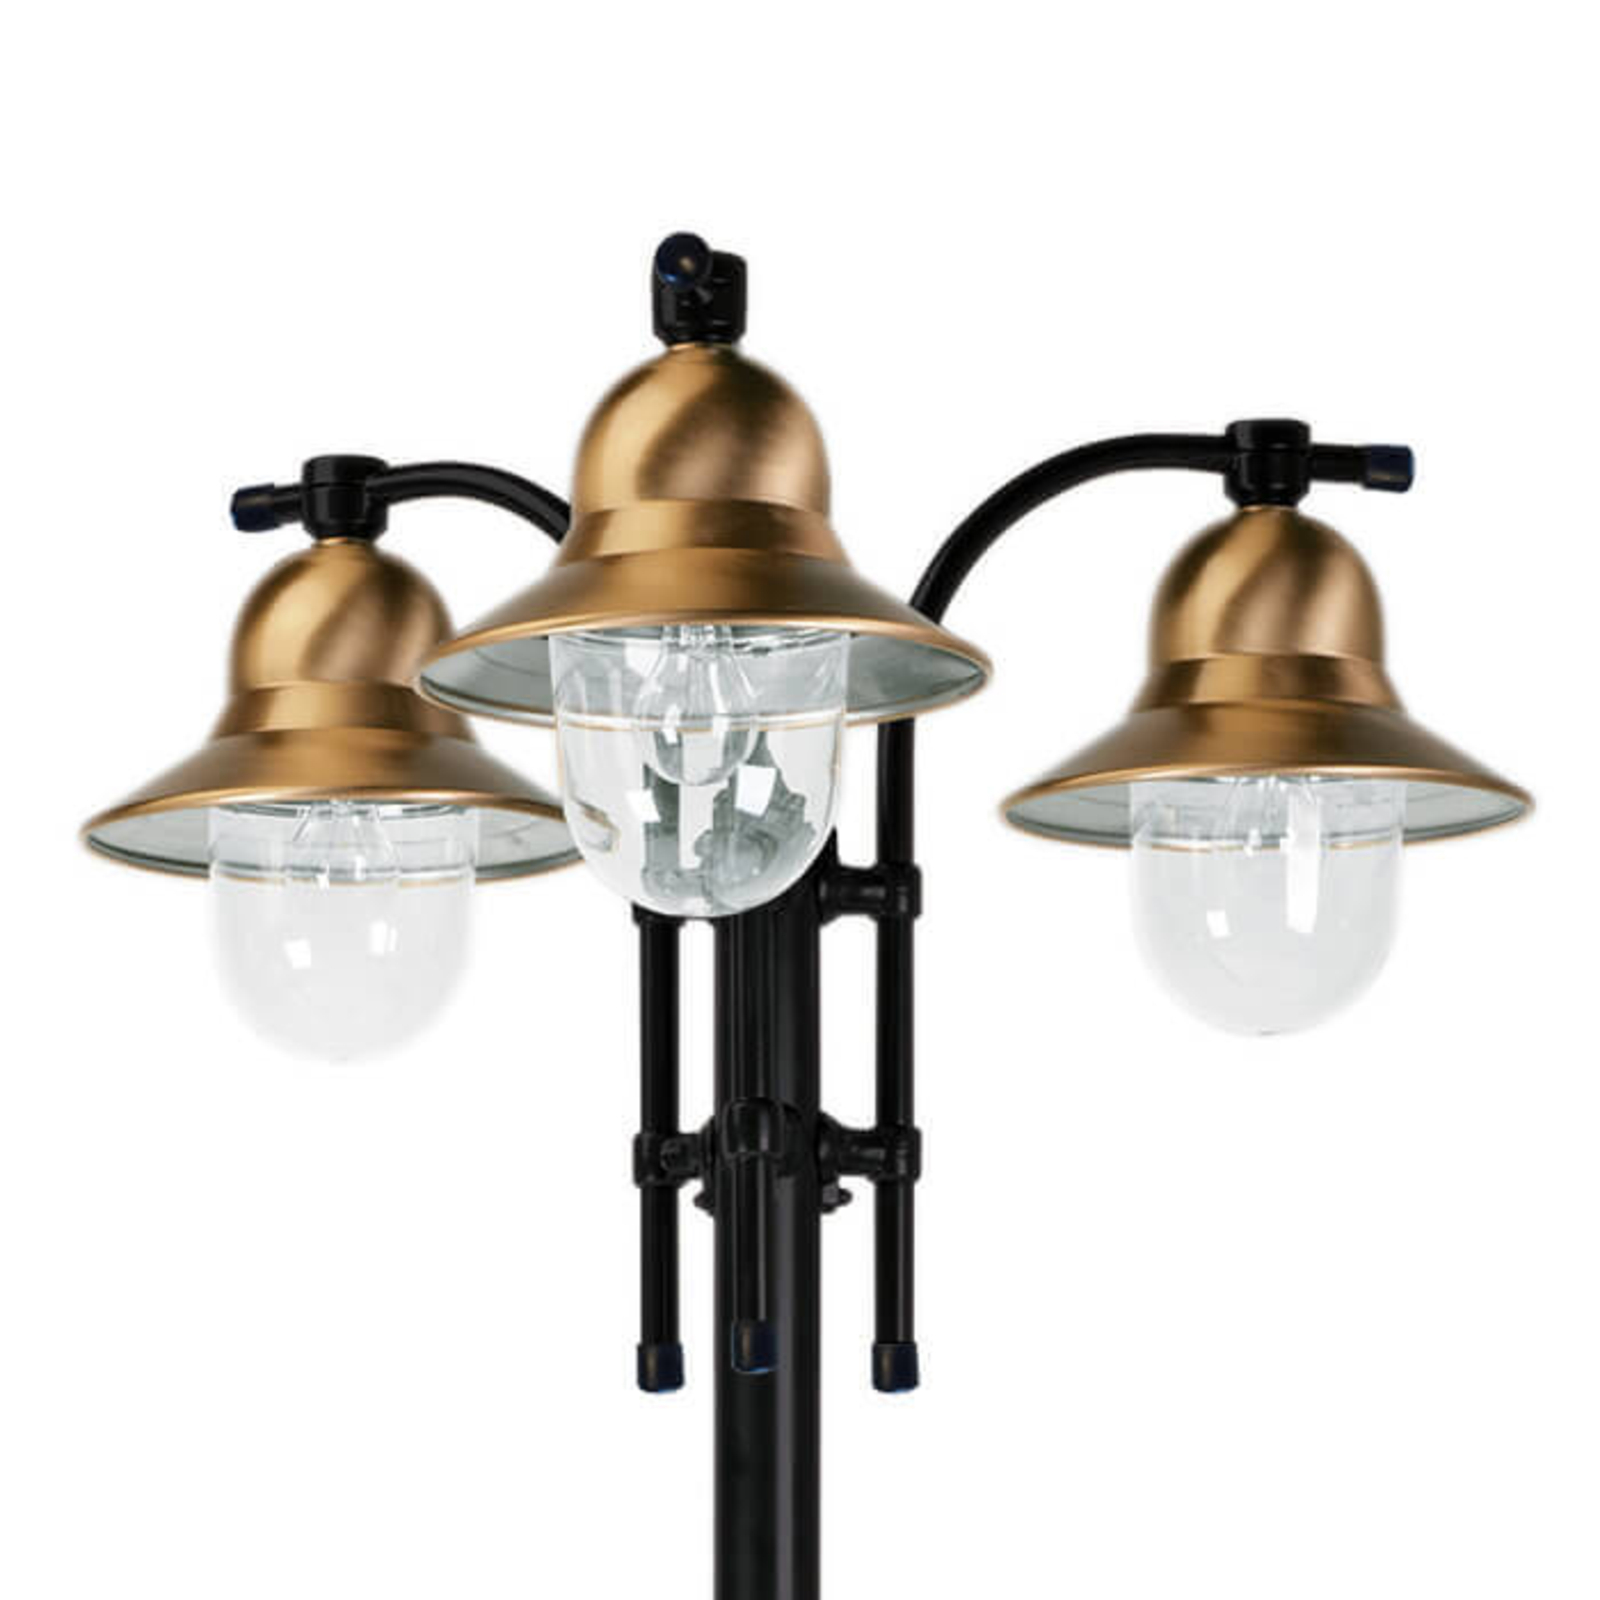 3-lamps lantaarnpaal Toscane, zwart